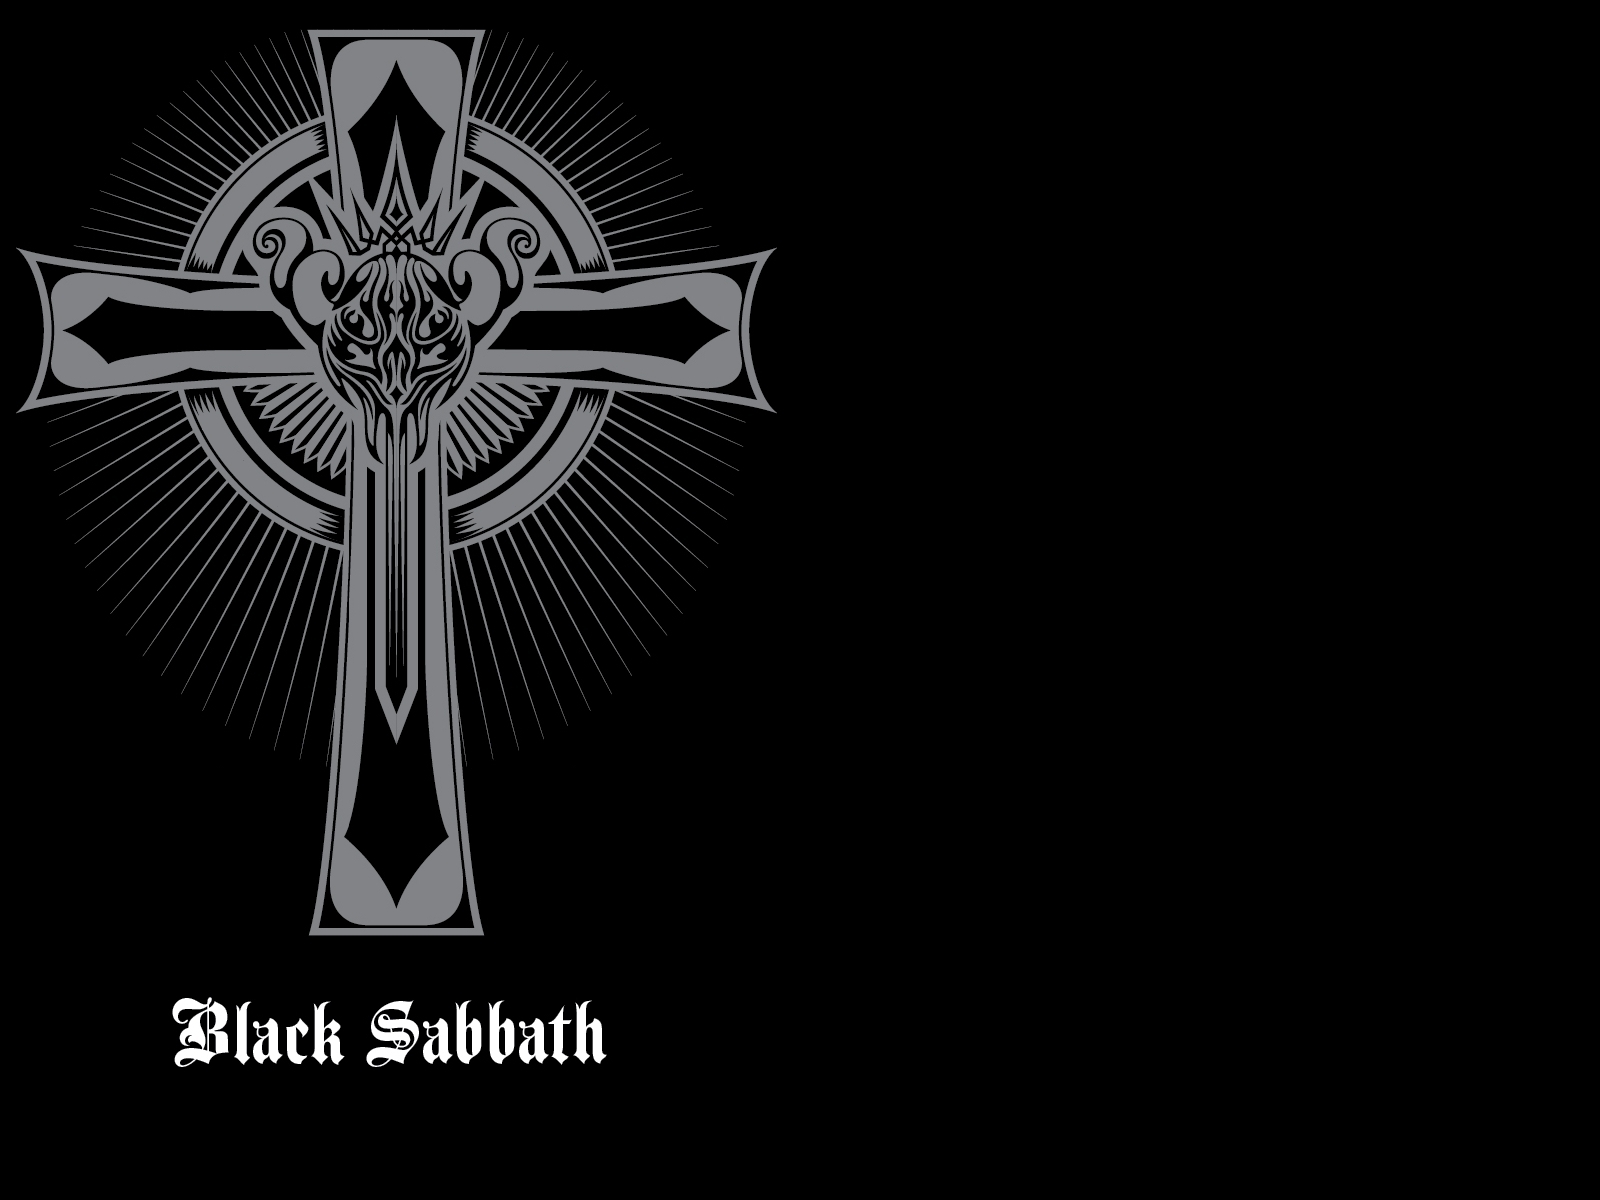 🔥 [74+] Black Sabbath Wallpapers | WallpaperSafari